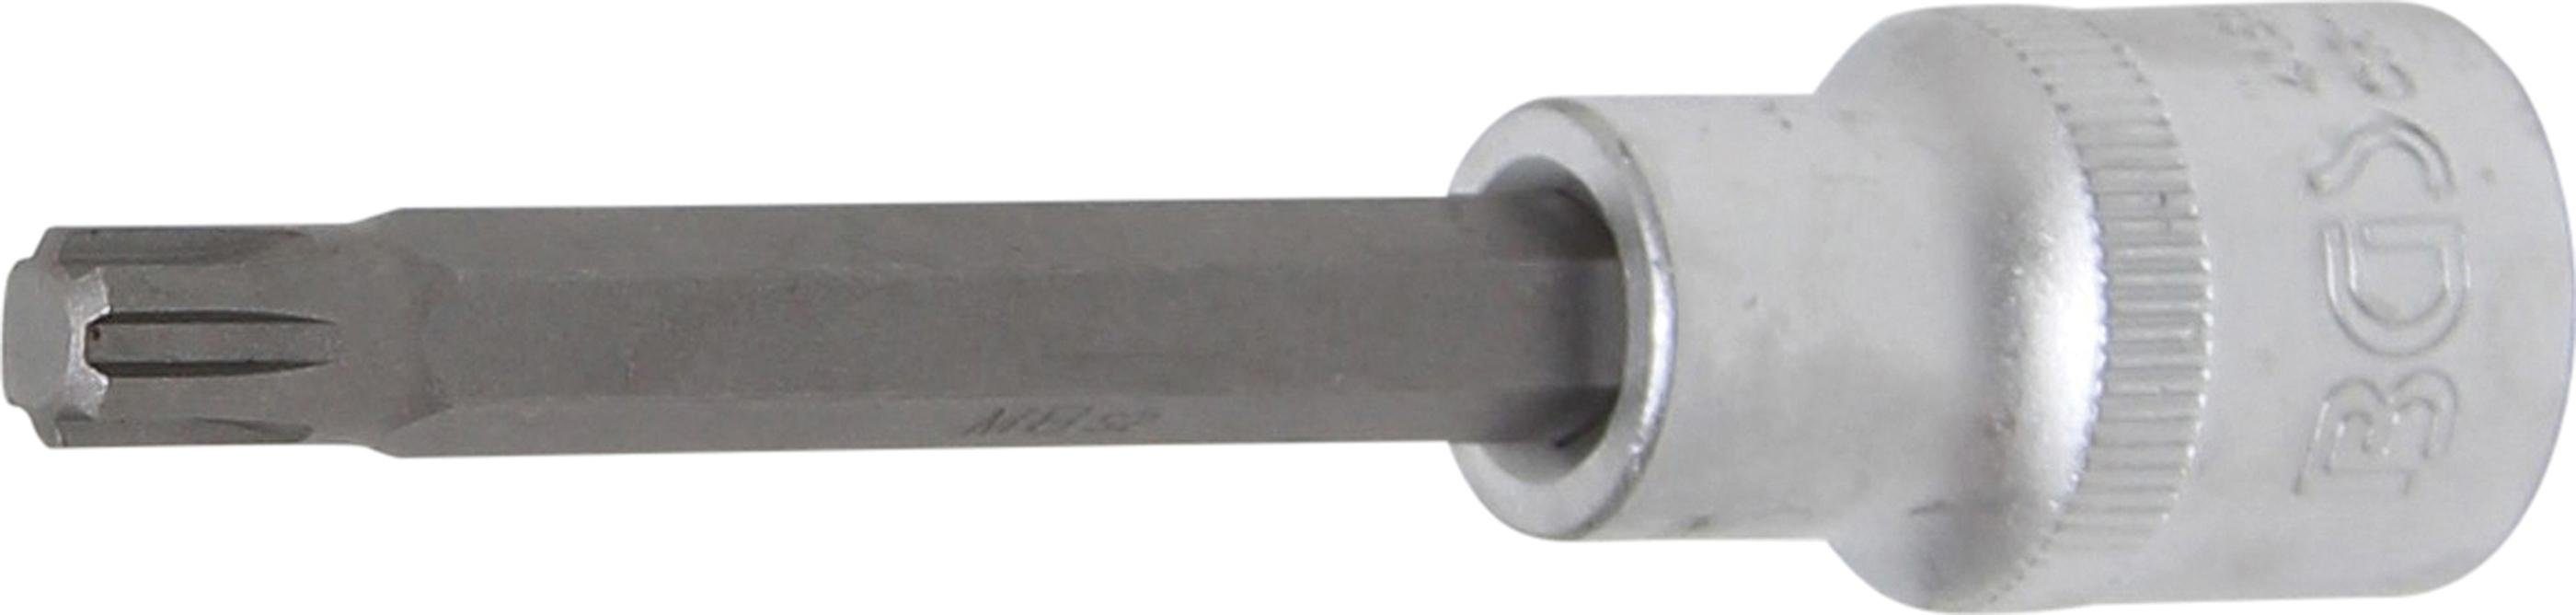 (für RIBE) M8 Länge 12,5 BGS mm Bit-Einsatz, Bit-Schraubendreher Antrieb Keil-Profil 100 mm, Innenvierkant (1/2), technic